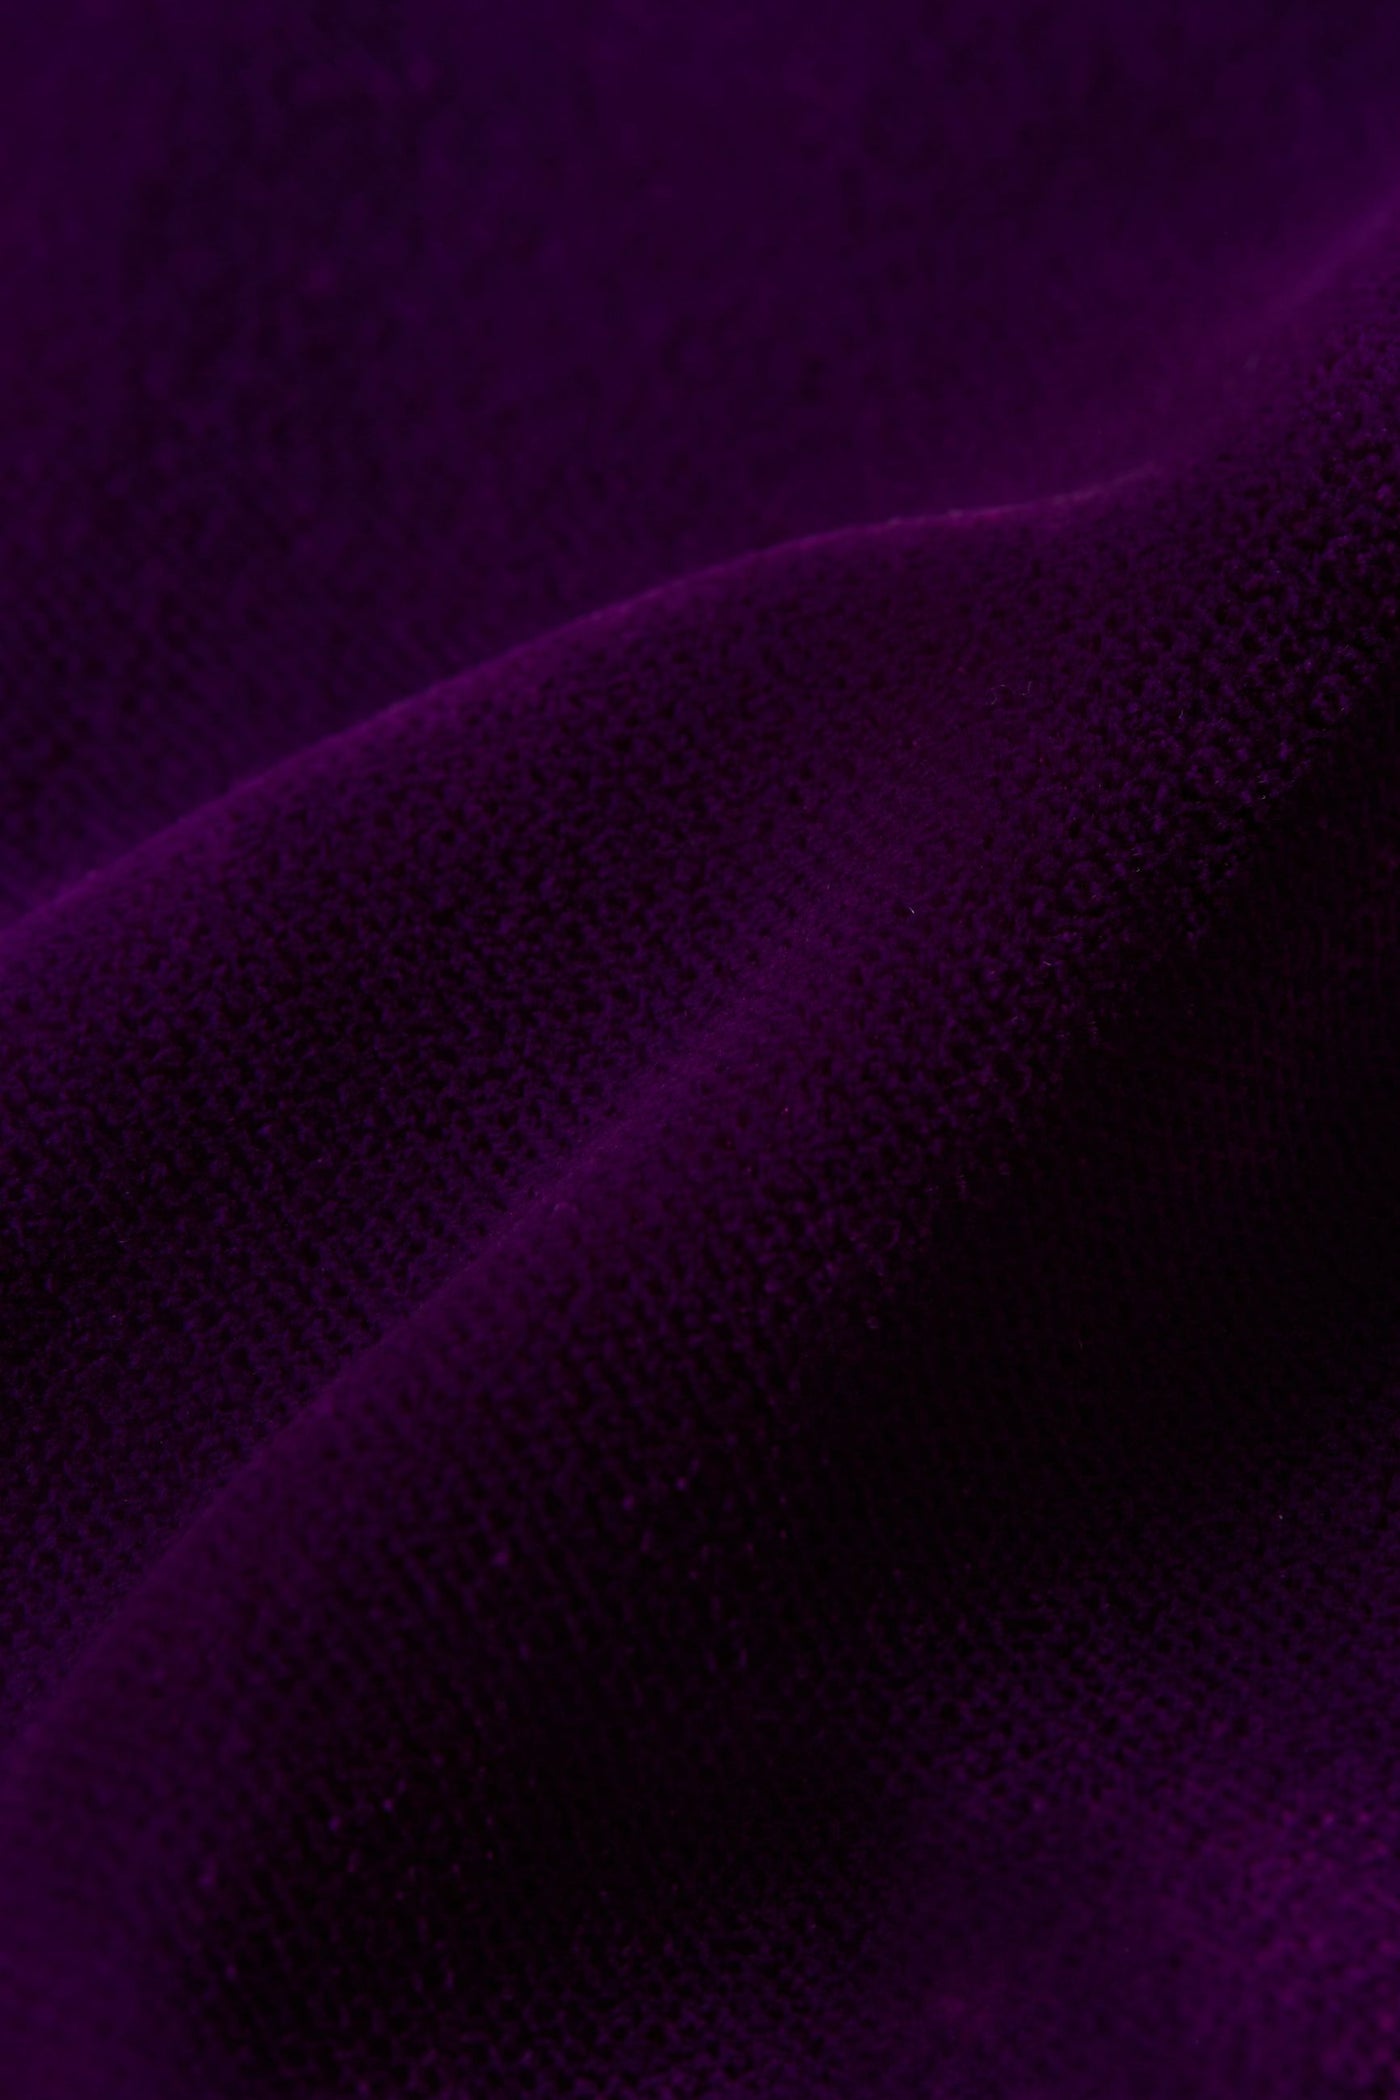 #farve_royale-purple